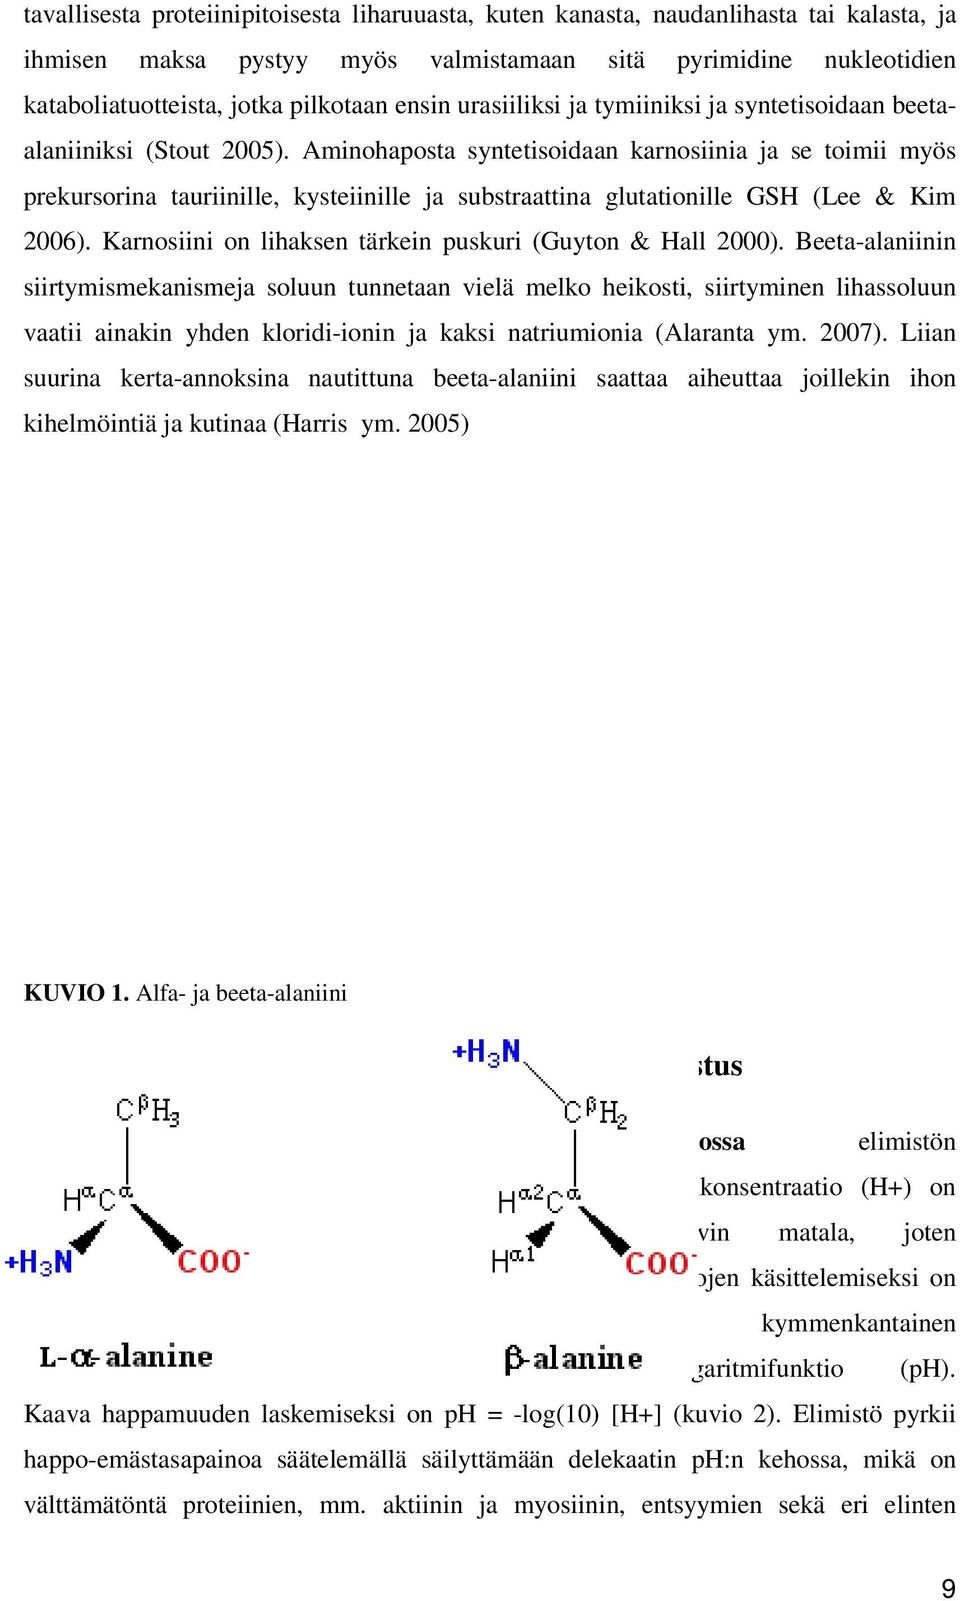 Aminohaposta syntetisoidaan karnosiinia ja se toimii myös prekursorina tauriinille, kysteiinille ja substraattina glutationille GSH (Lee & Kim 2006).